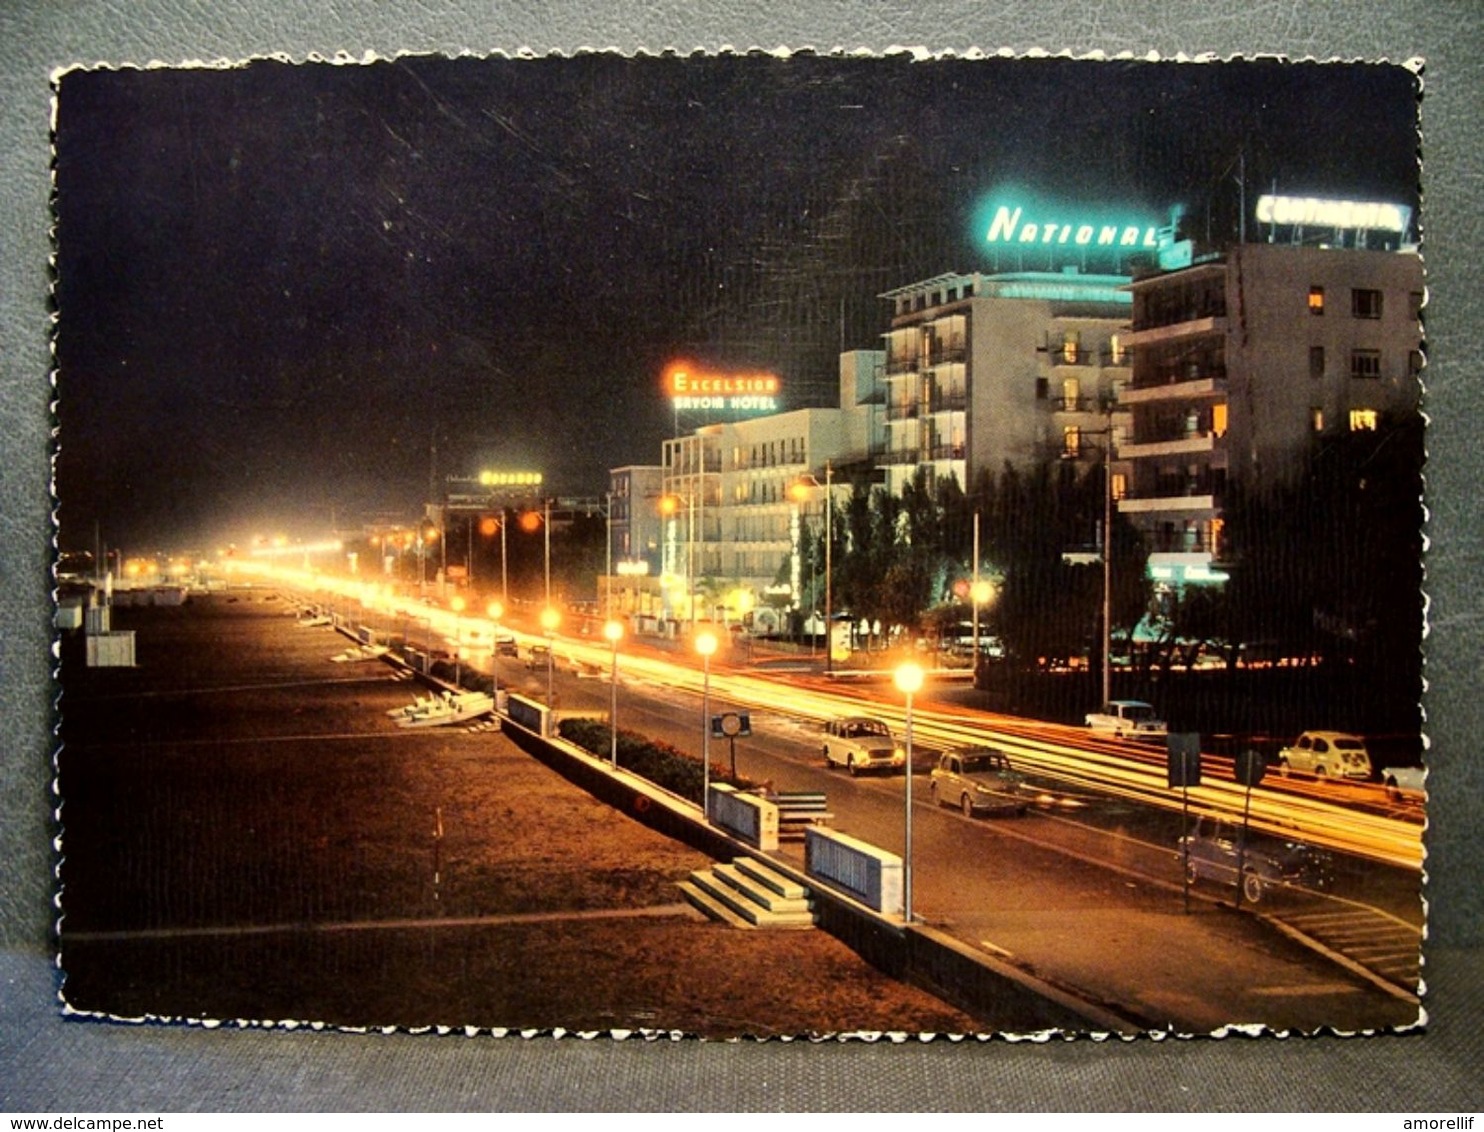 (FG.J48) RIMINI - LUNGOMARE Di Notte / Notturno (VIAGGIATA 1966) Hotel NATIONAL, CONTINENTAL, EXCELSIOR SAVOIA - Rimini